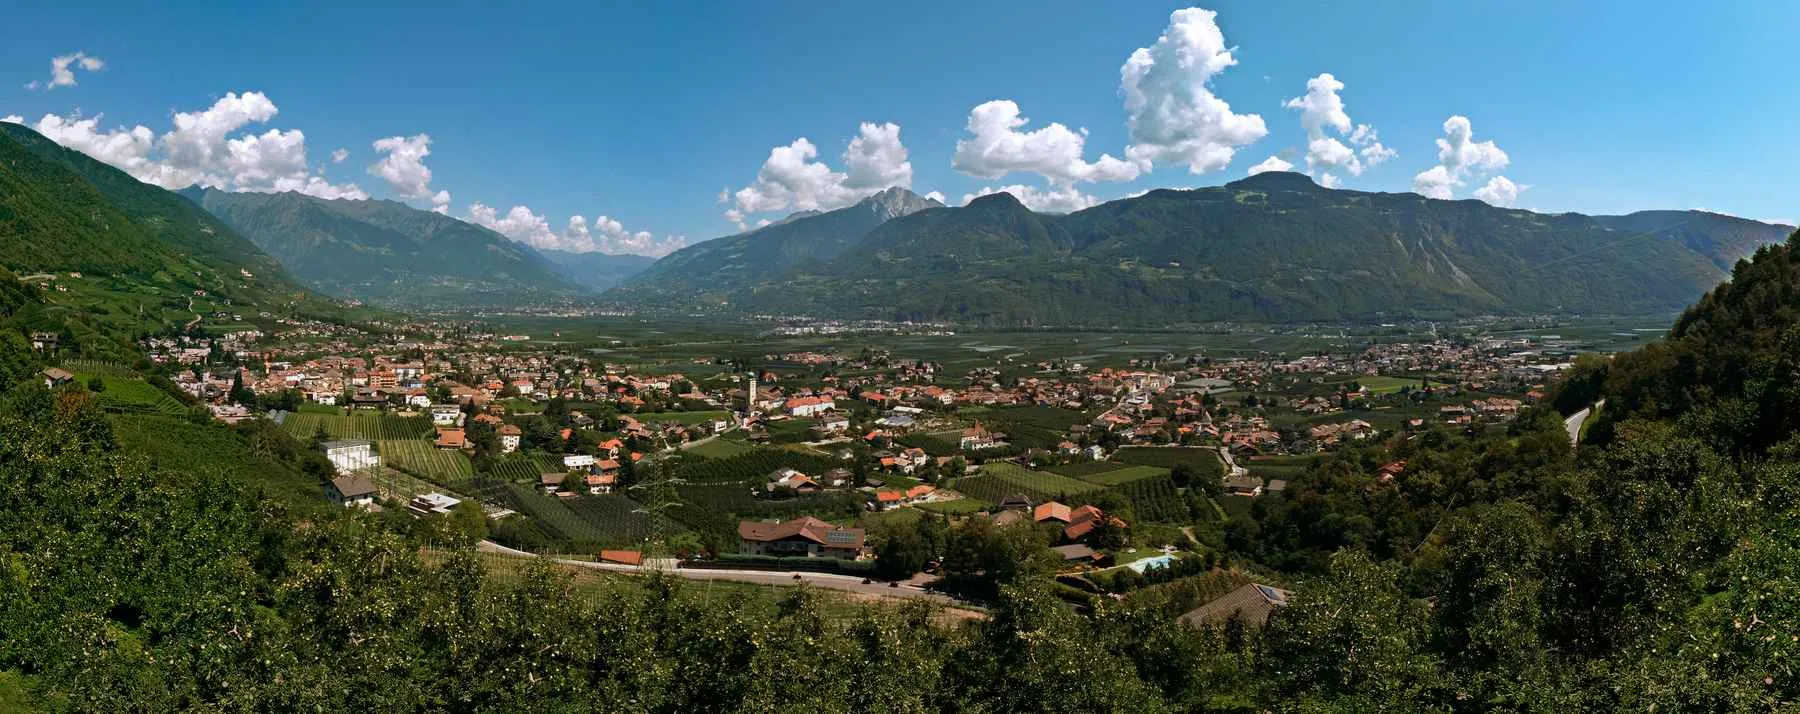 Obrázok Provincia Autonoma di Bolzano/Bozen